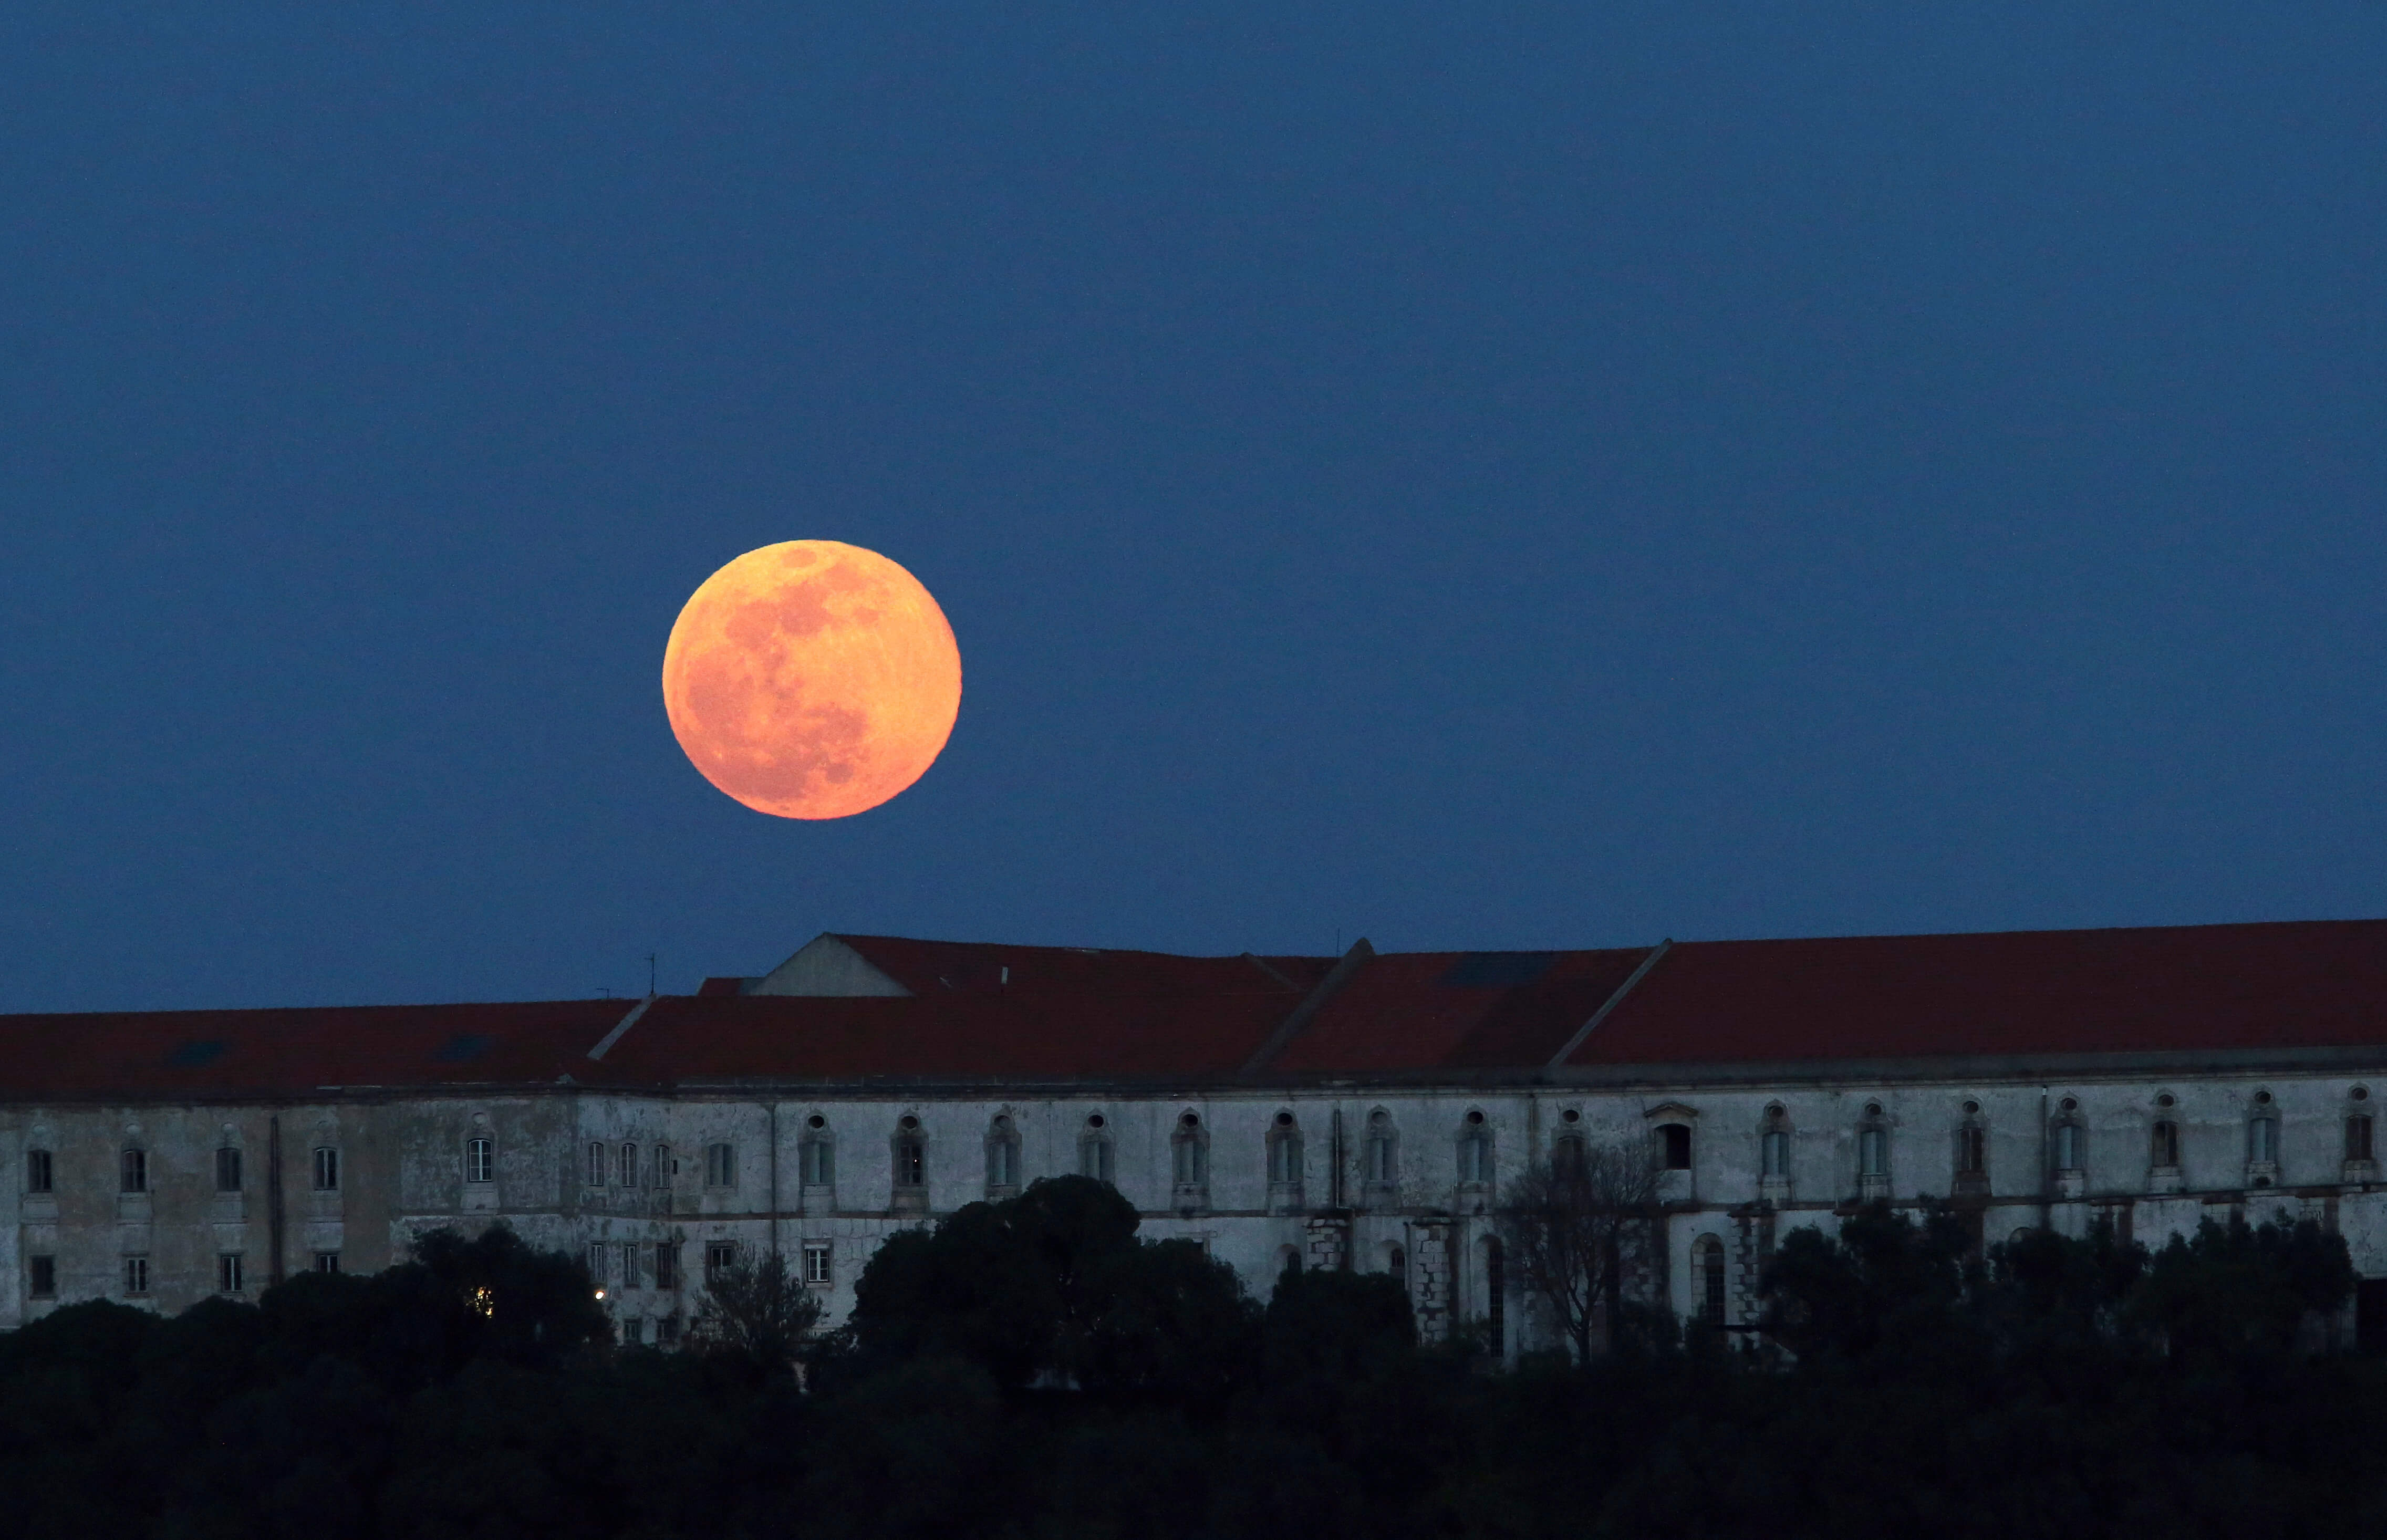 FOTO Luna de nieve vista en Portugal; científicos revelan que la Luna orbita adentro de la atmósfera terrestre (AP portugal 19 febrero 2019)